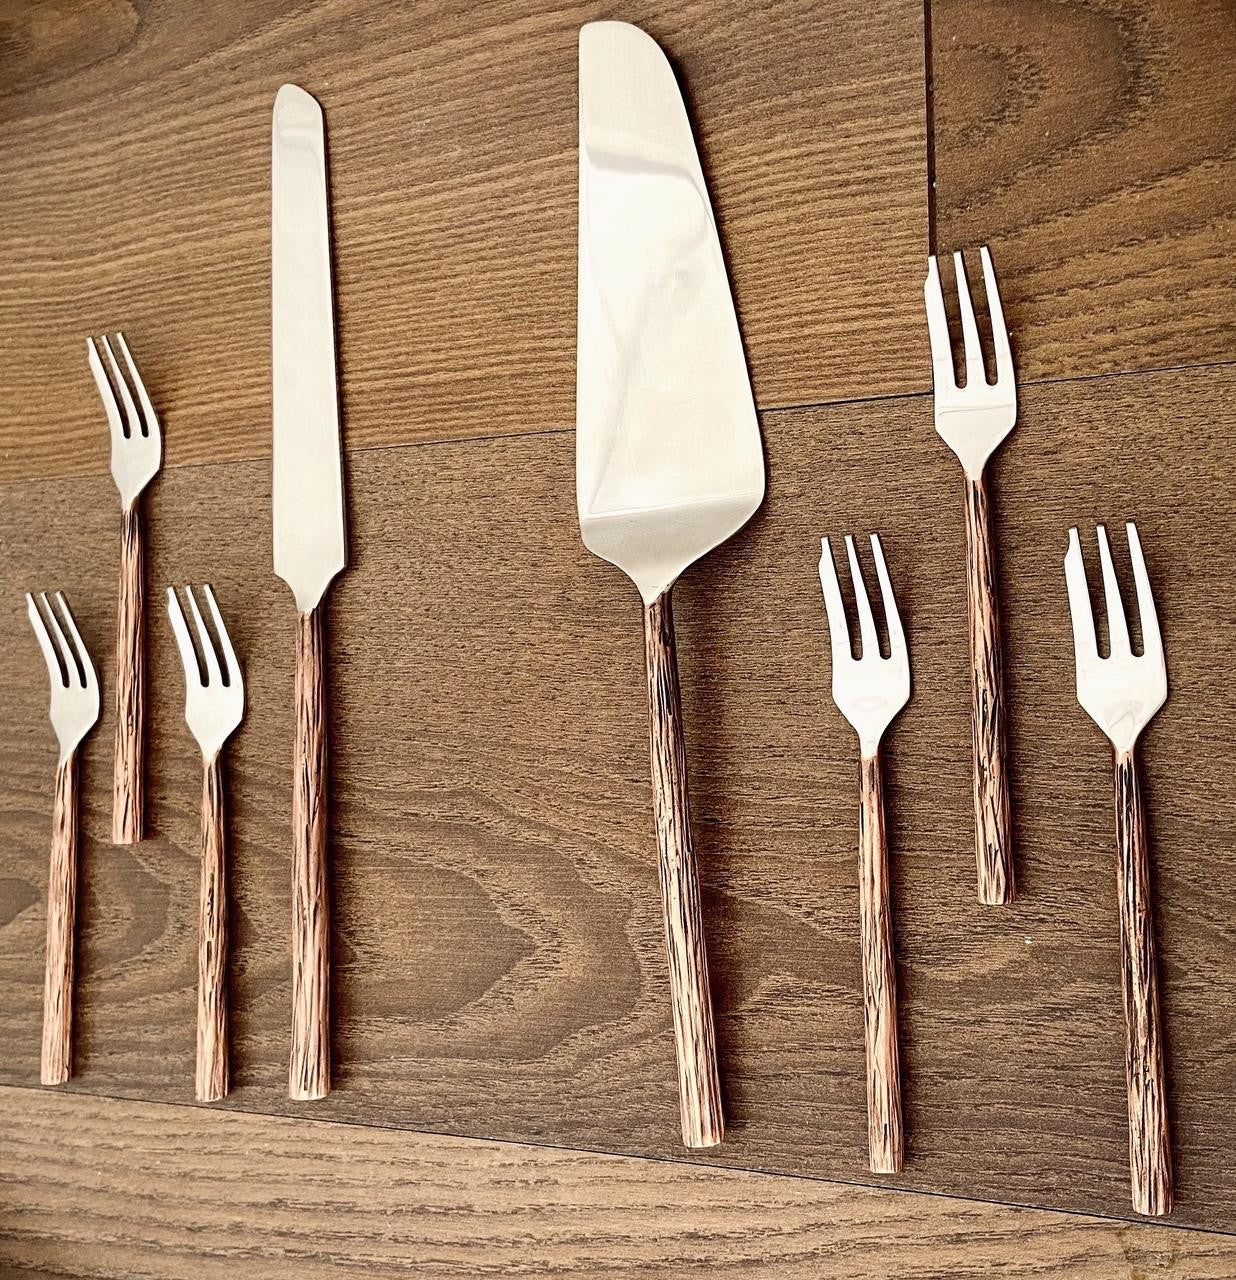 Pastry Forks Set/4 Copper